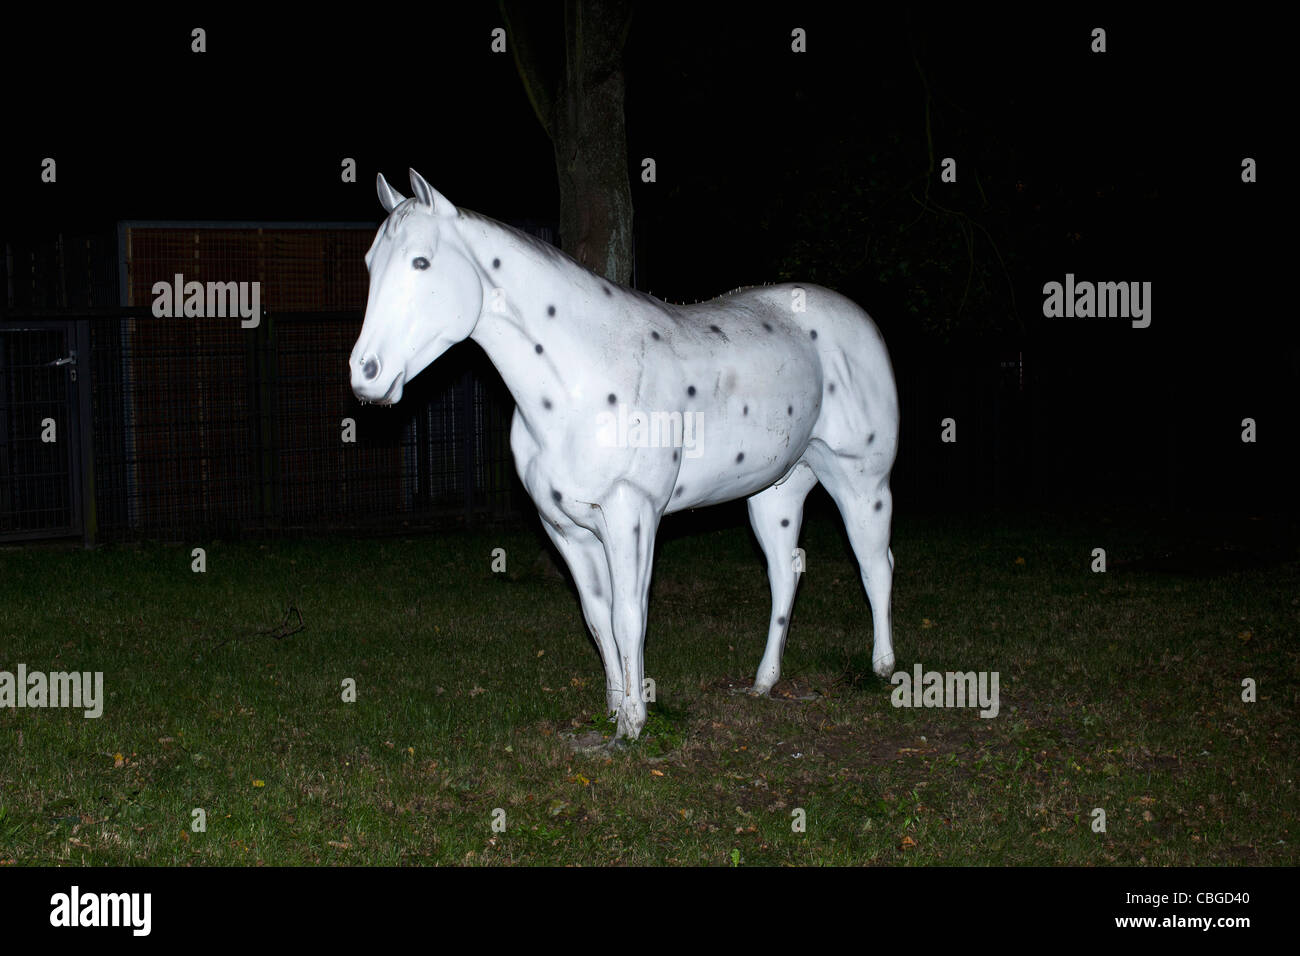 Cheval blanc sur l'herbe artificielle décorée avec des points noirs Banque D'Images